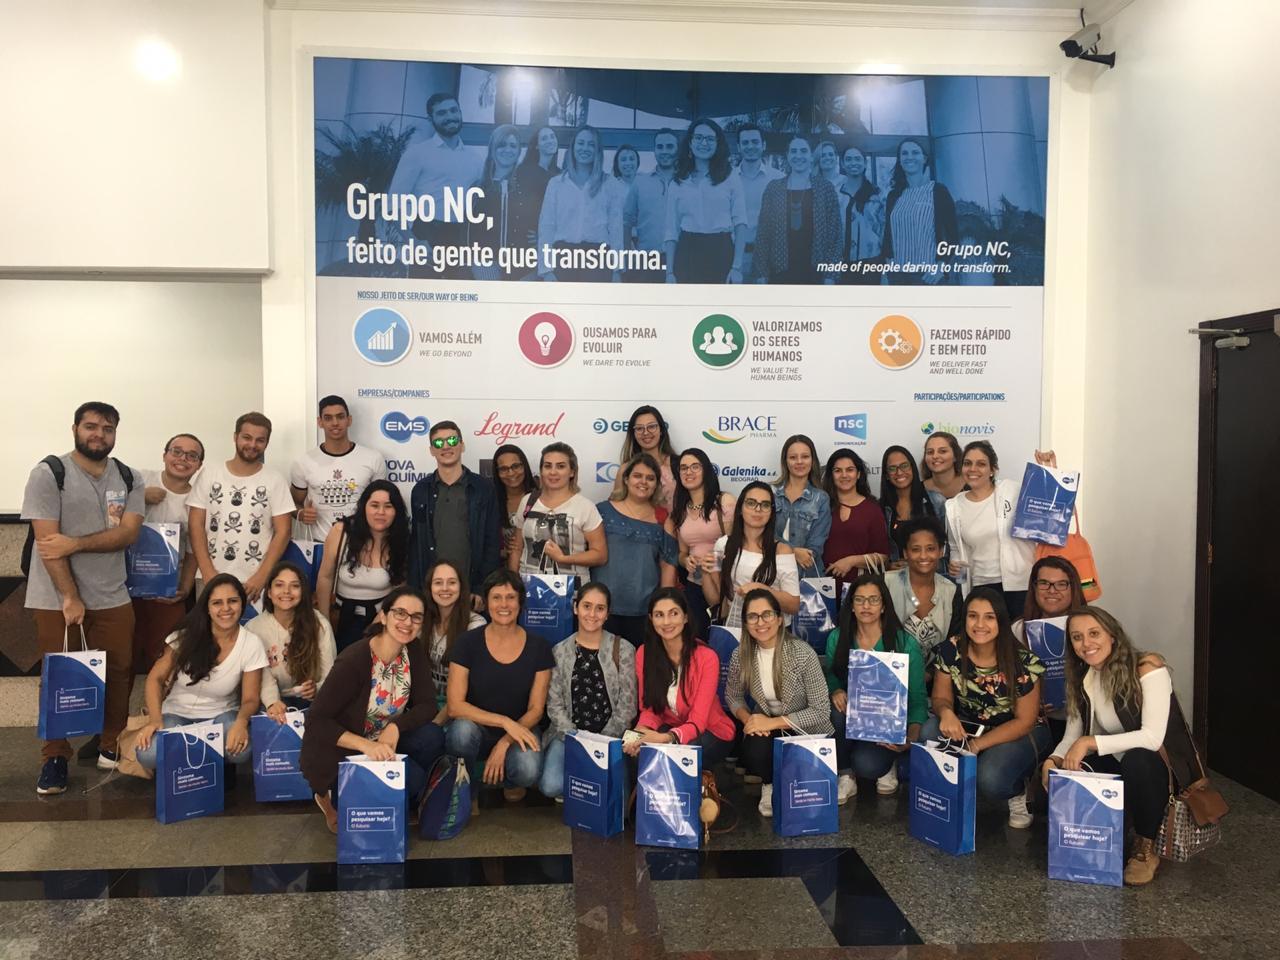 Alunos do Curso de Farmácia do Câmpus Bragança Paulista visitam empresa farmacêutica 